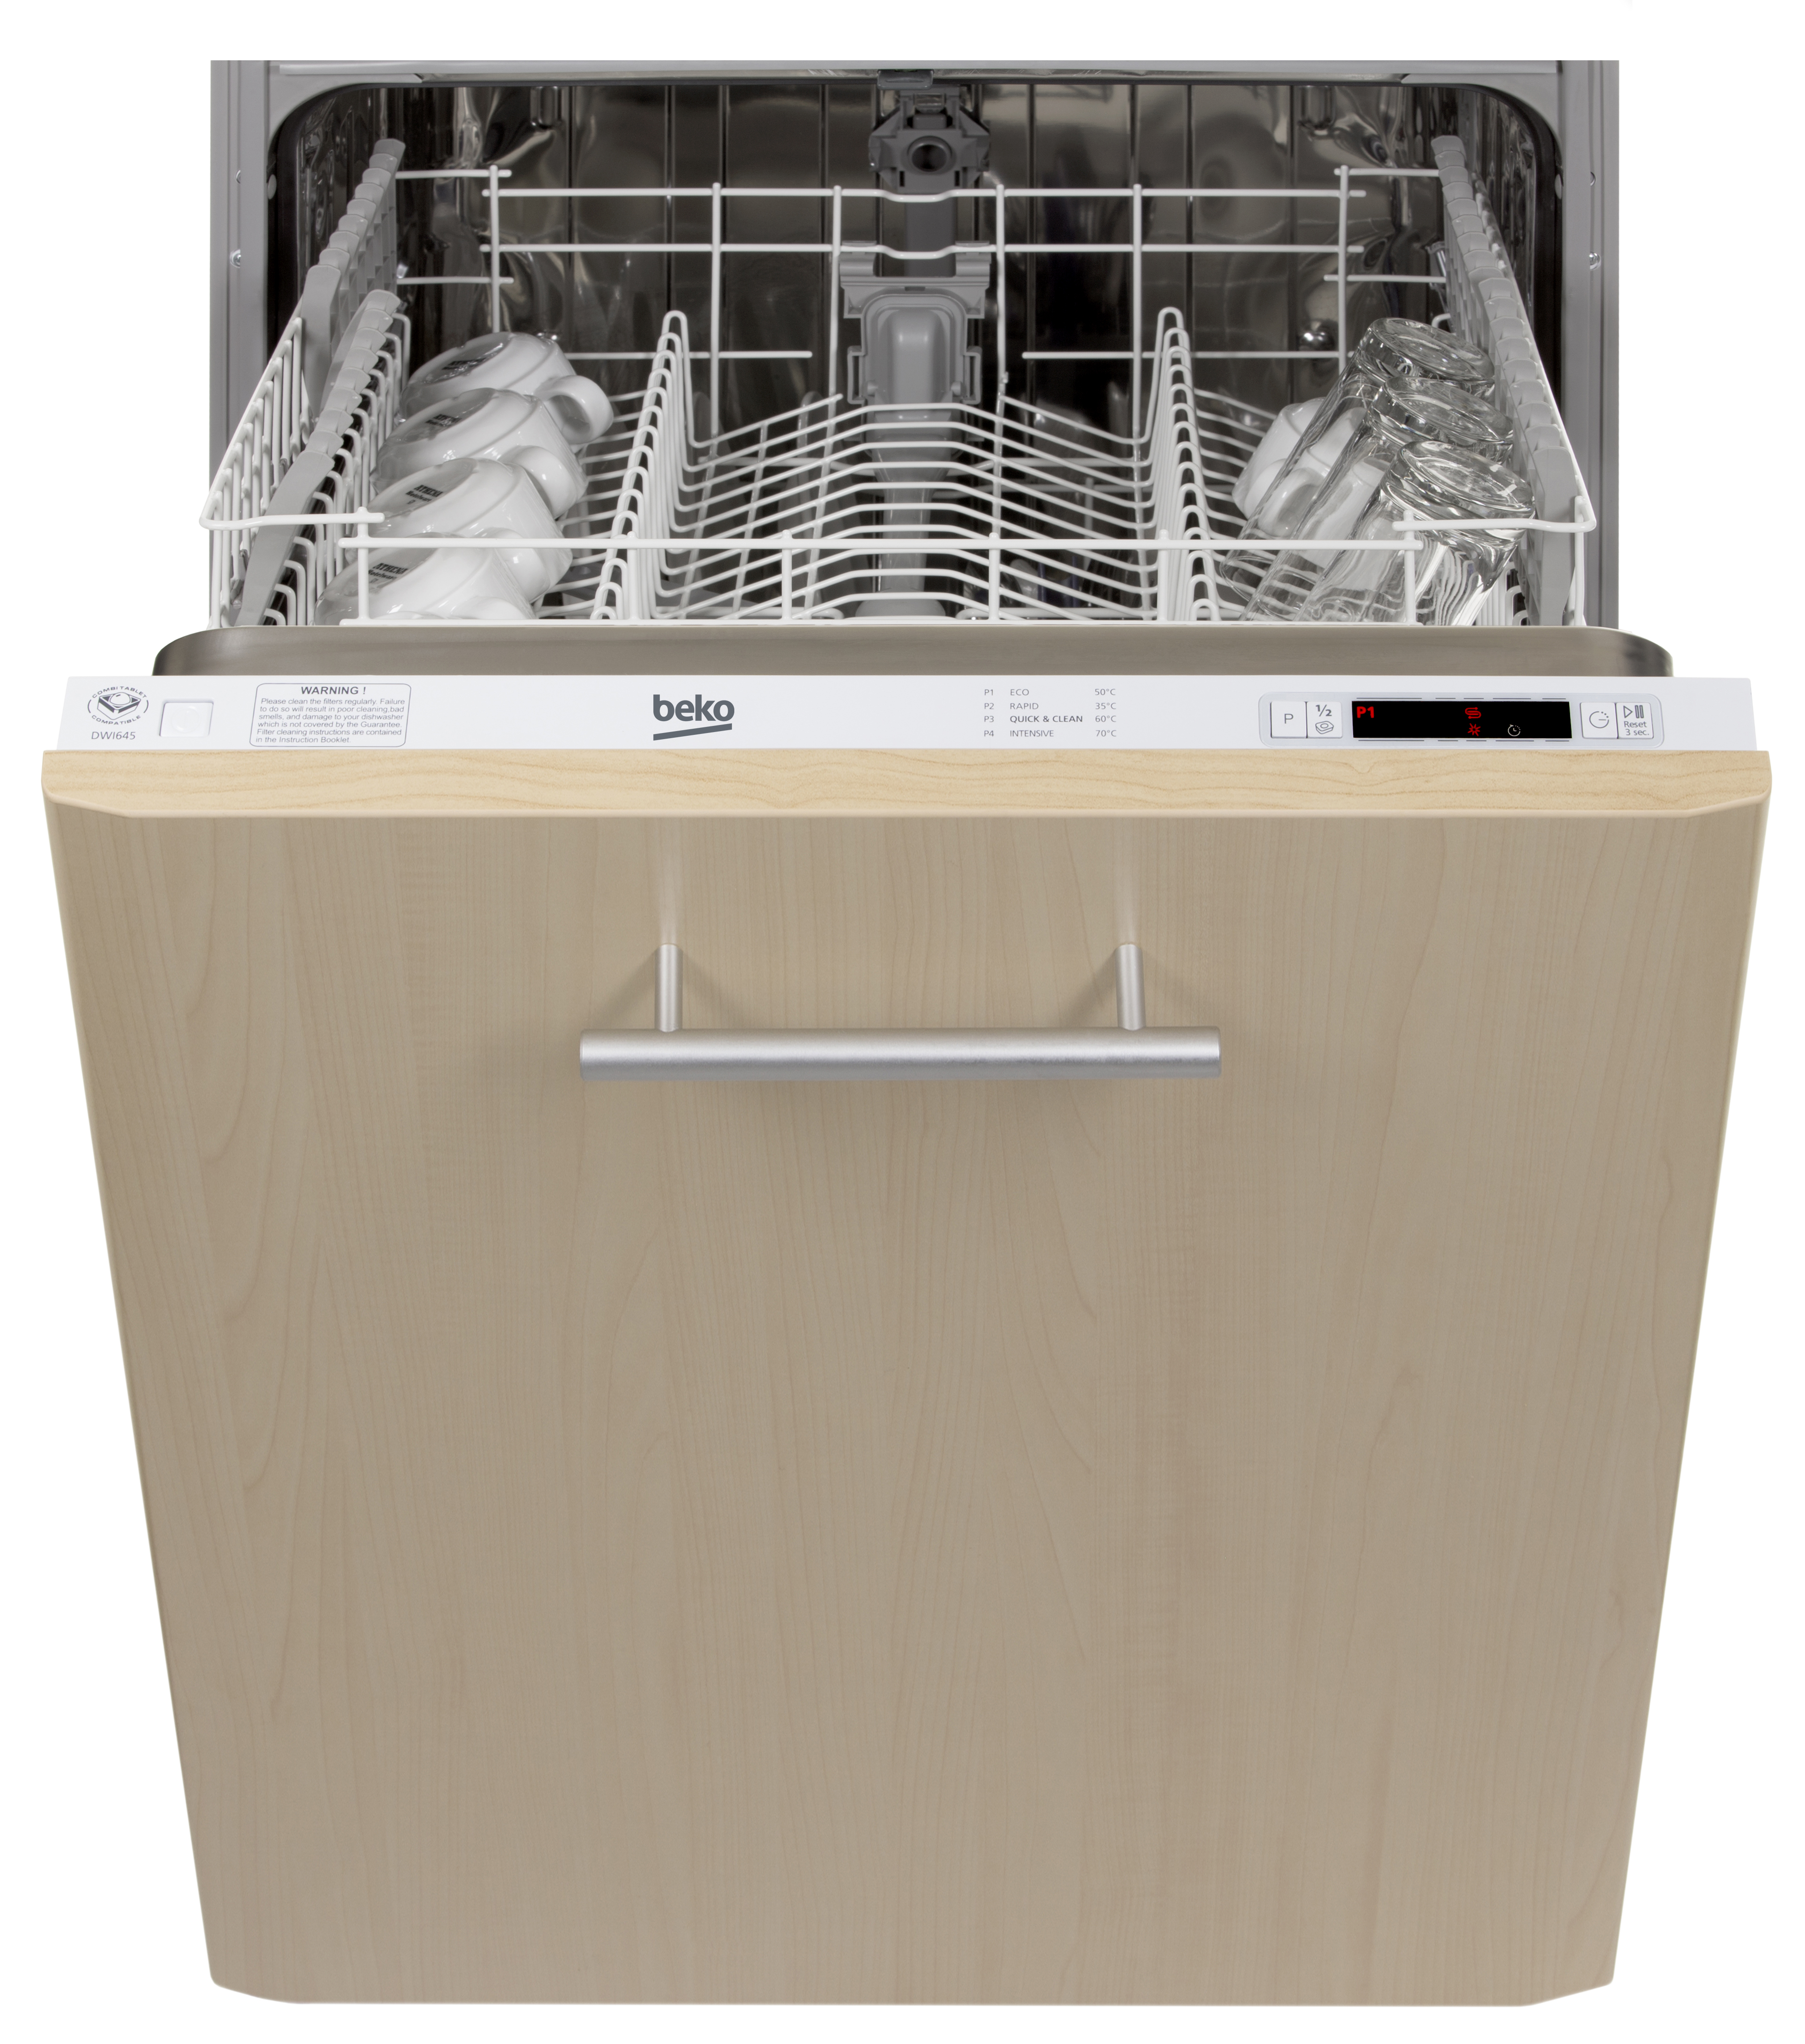 Встроенная посудомоечная машина 60 см горенье. Посудомоечная машина Beko Dwi 645. Посудомоечная машина БЕКО 60 см встраиваемая. Посудомоечная машина Beko встраиваемая 60. Посудомоечная машина Beko Dwi 645 бежевая.